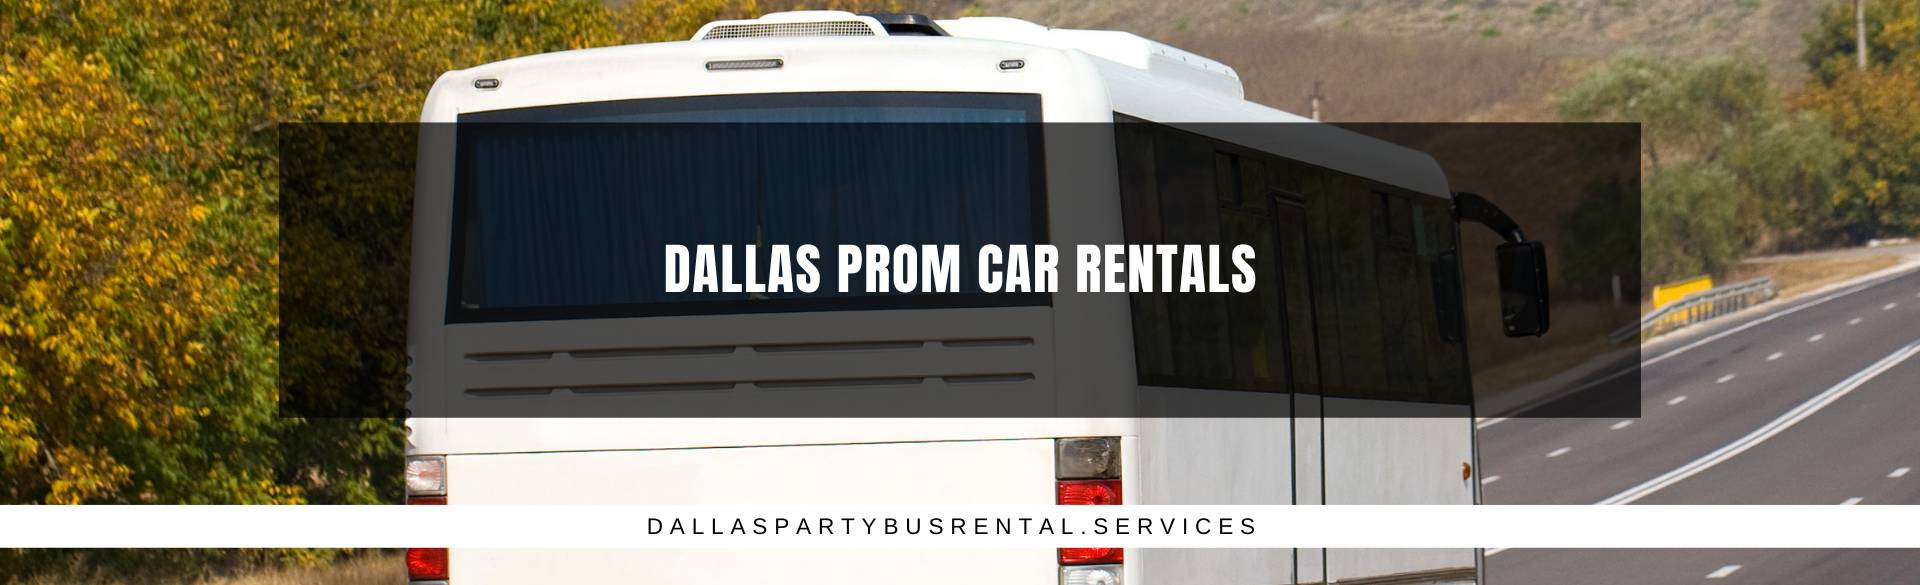 Dallas Prom Car Rentals